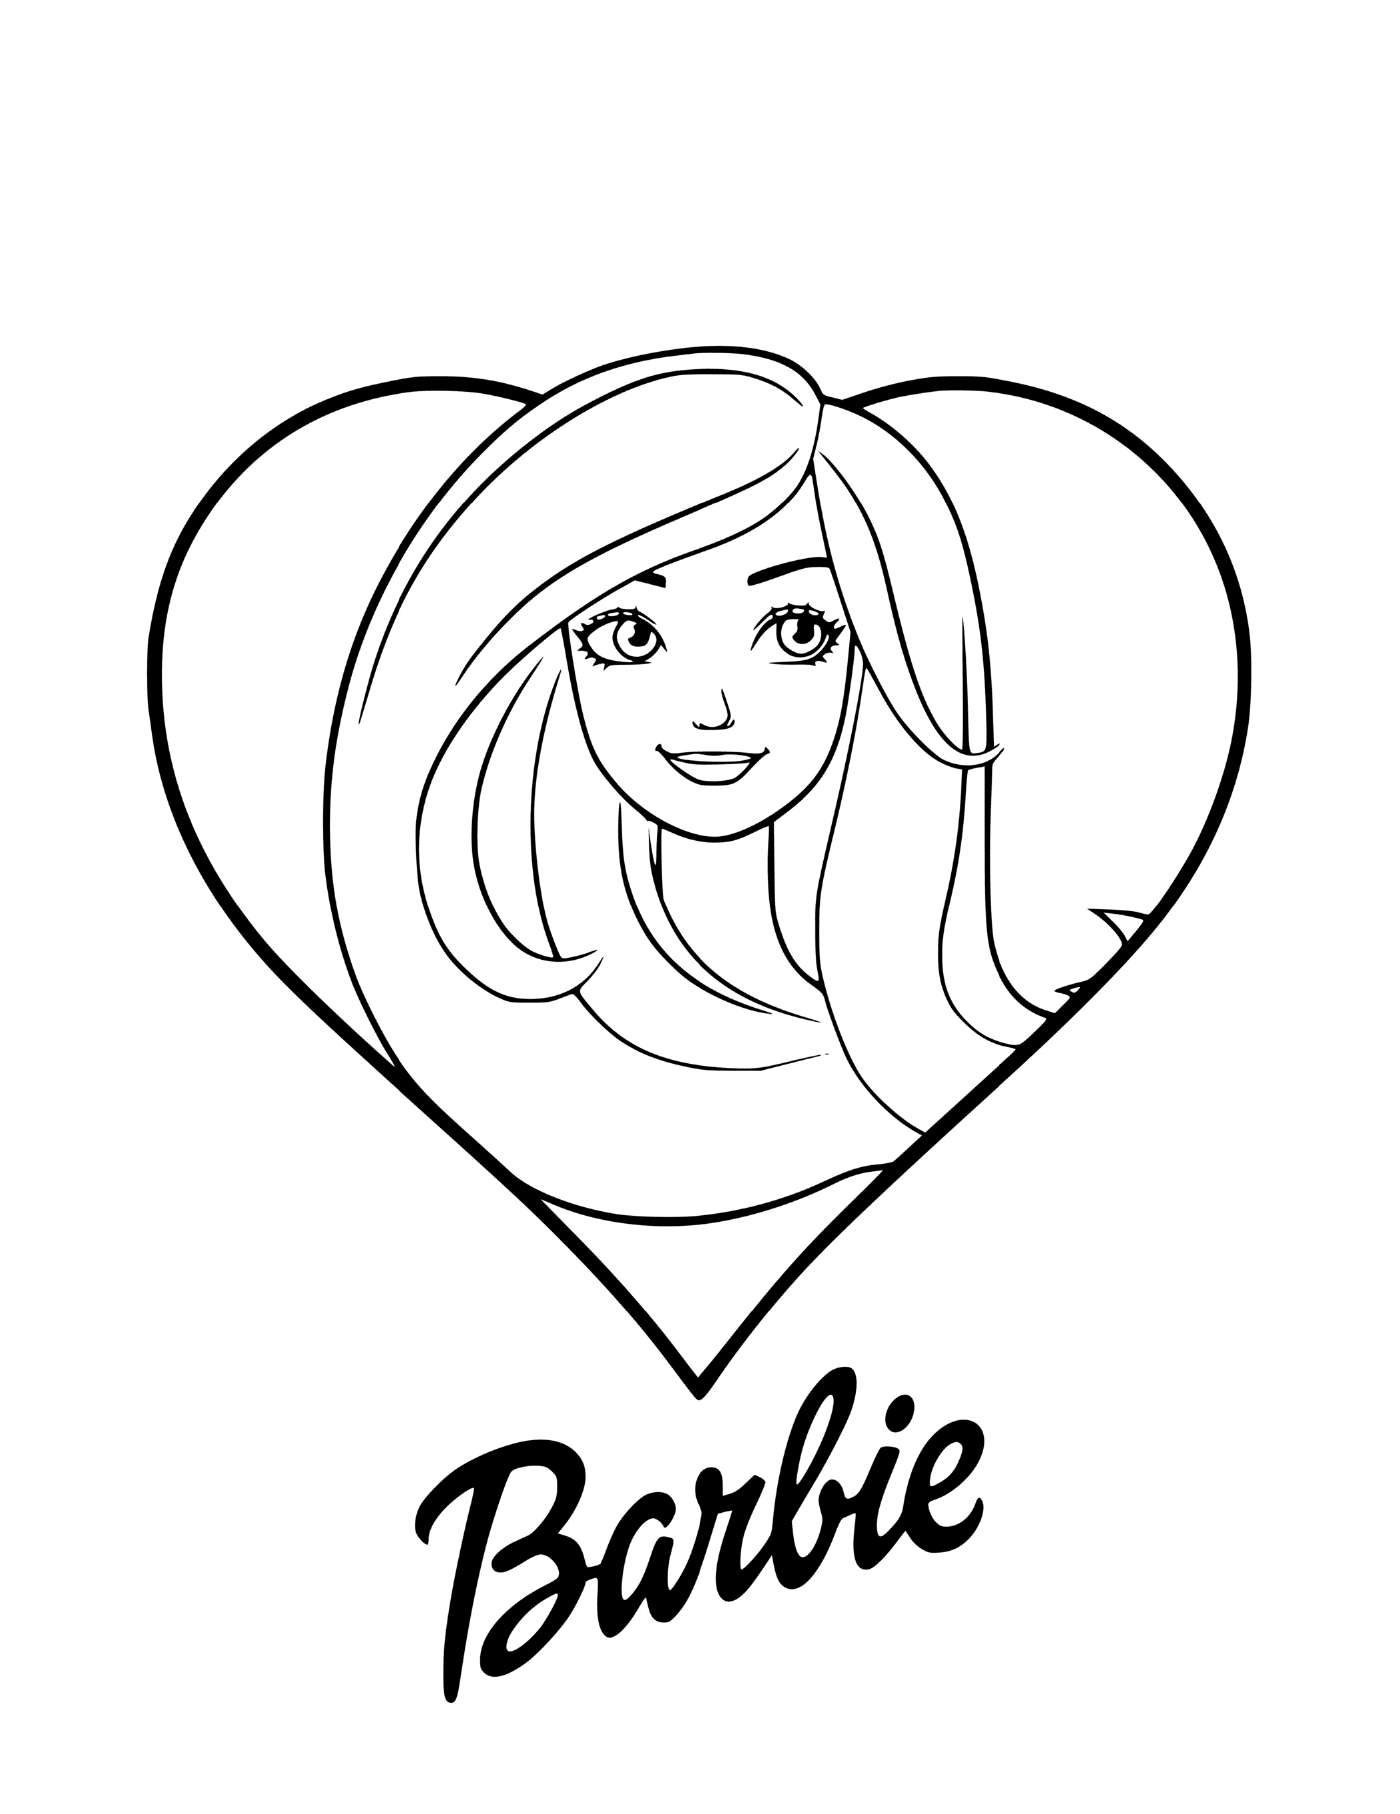 coloriage barbie love avec un coeur